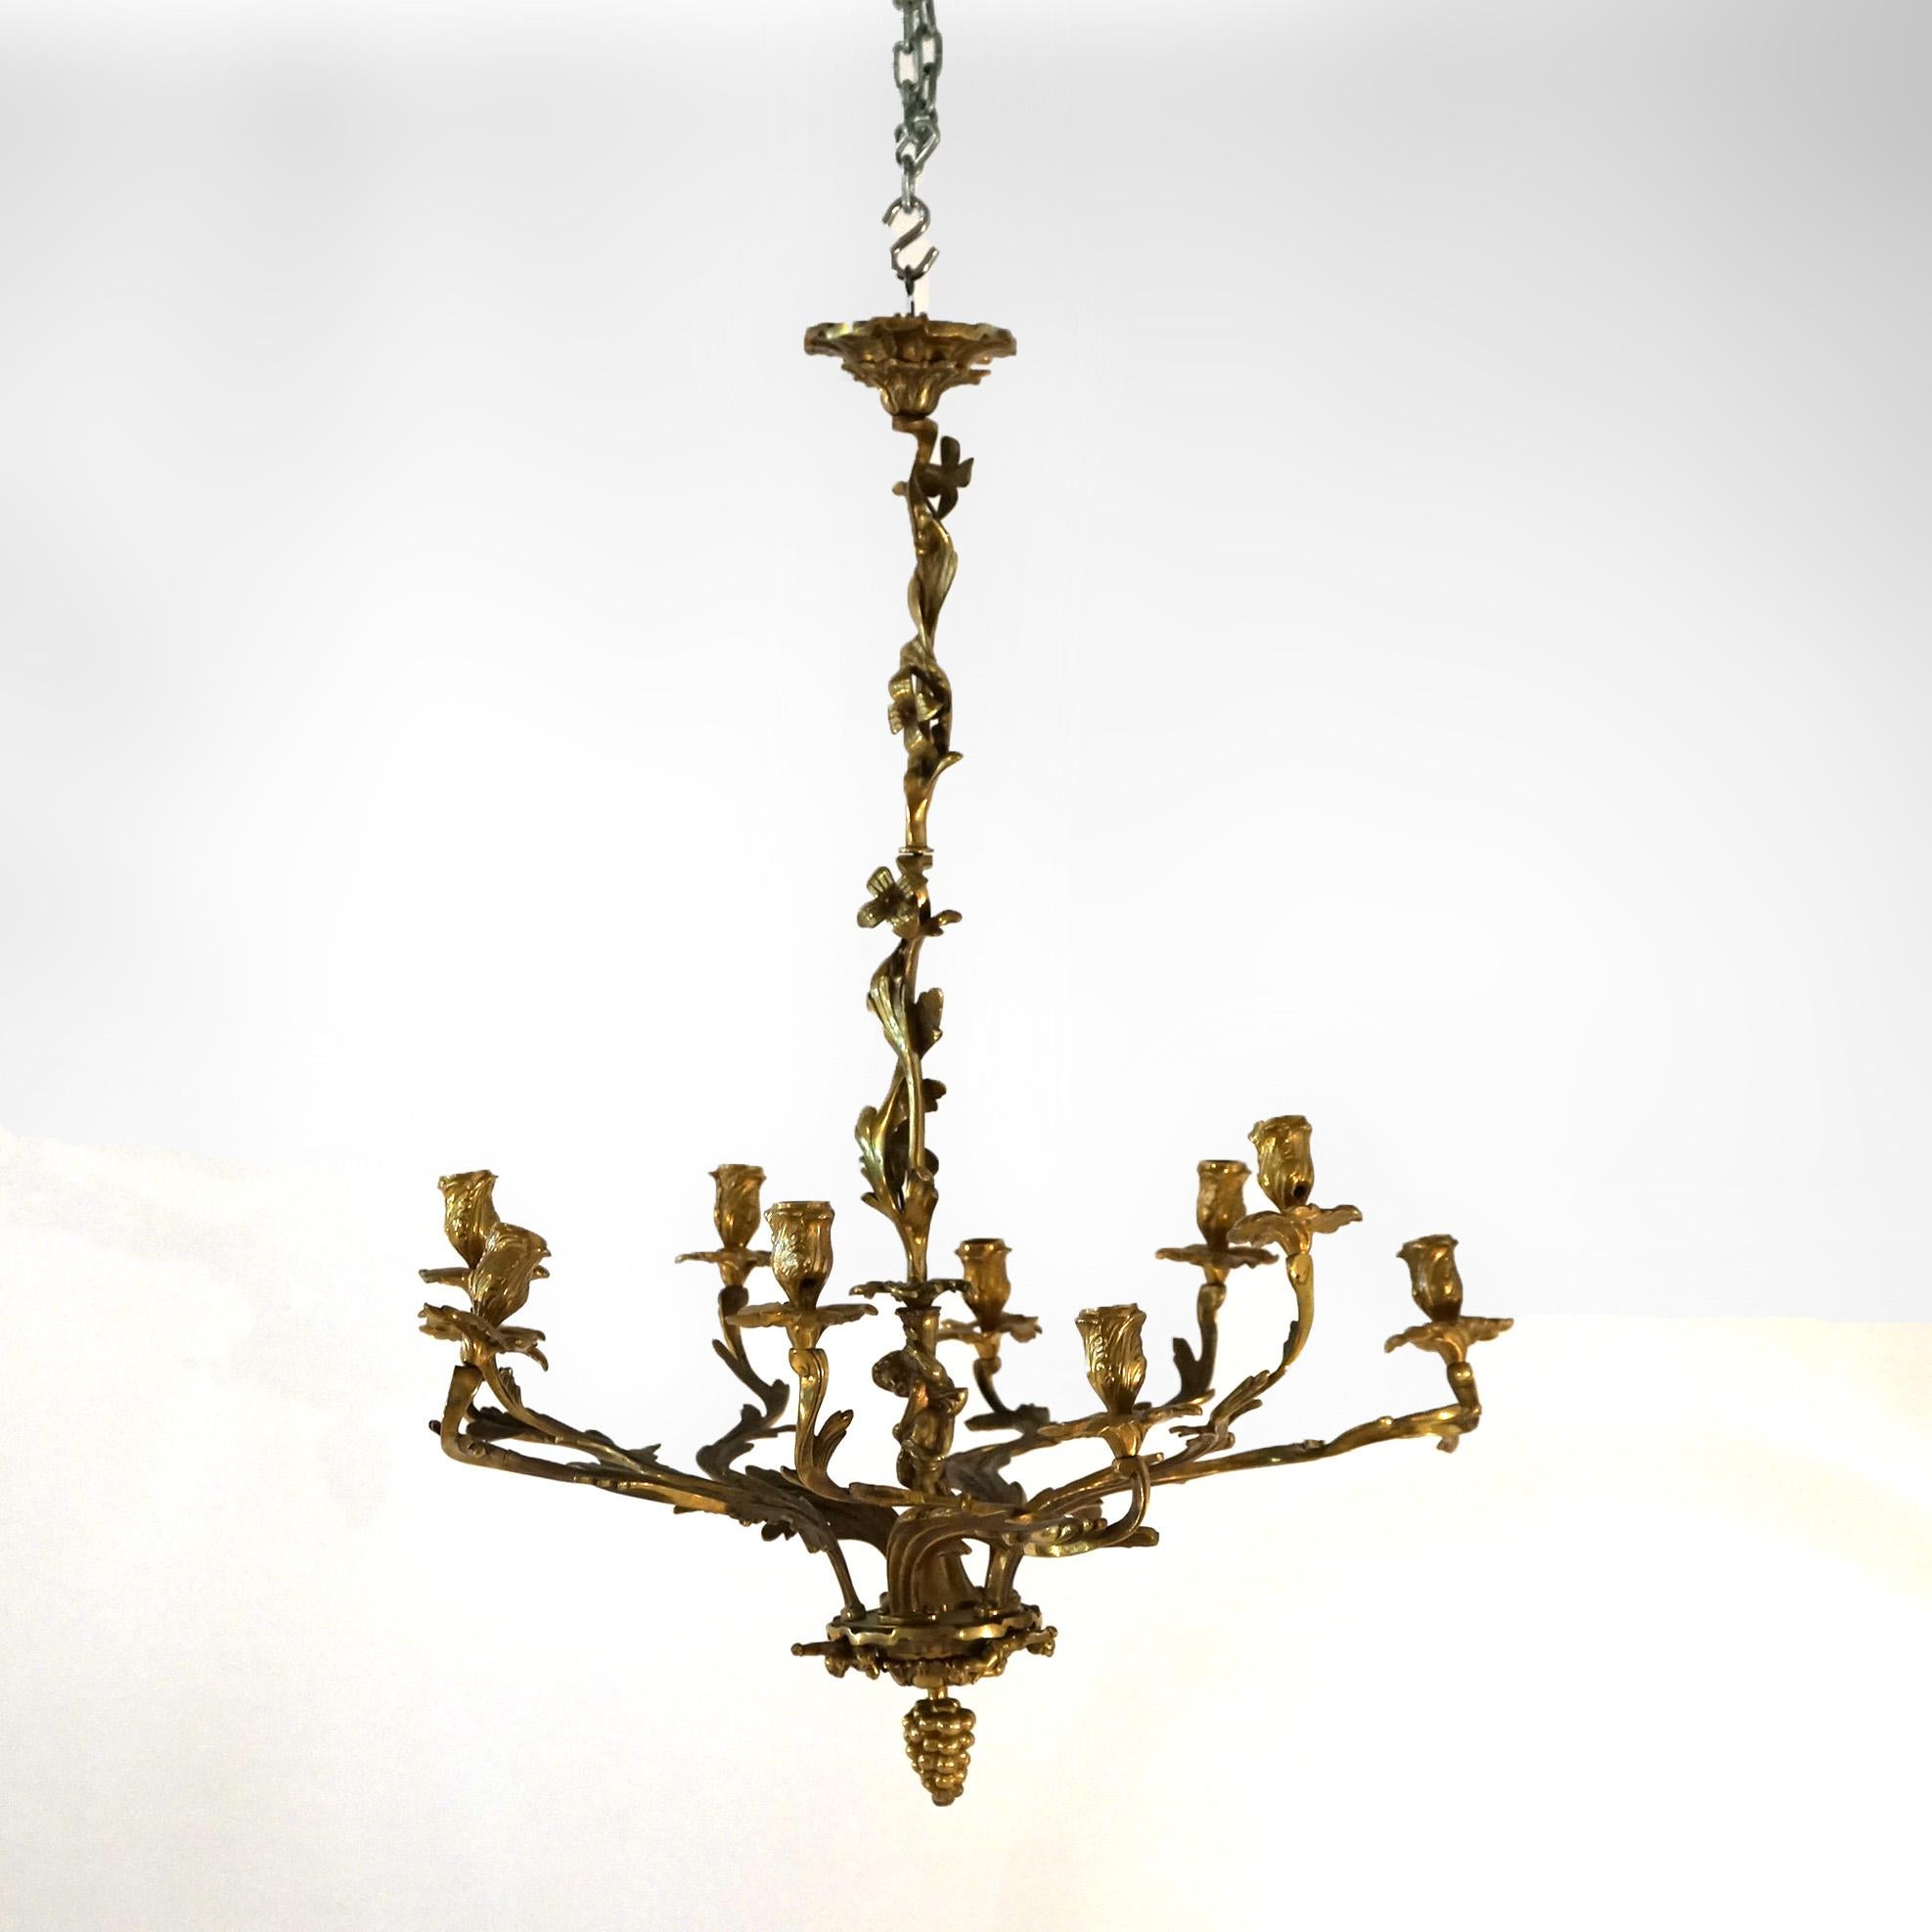 Ein antiker französischer Hängeleuchter im Louis-XIV-Stil bietet eine vergoldete Bronzekonstruktion mit einer Mittelsäule, die einen Cherub, eine Traube in Form eines tropfenförmigen Abschlusses und zehn blattförmige Arme hat, die in Kerzenfassungen